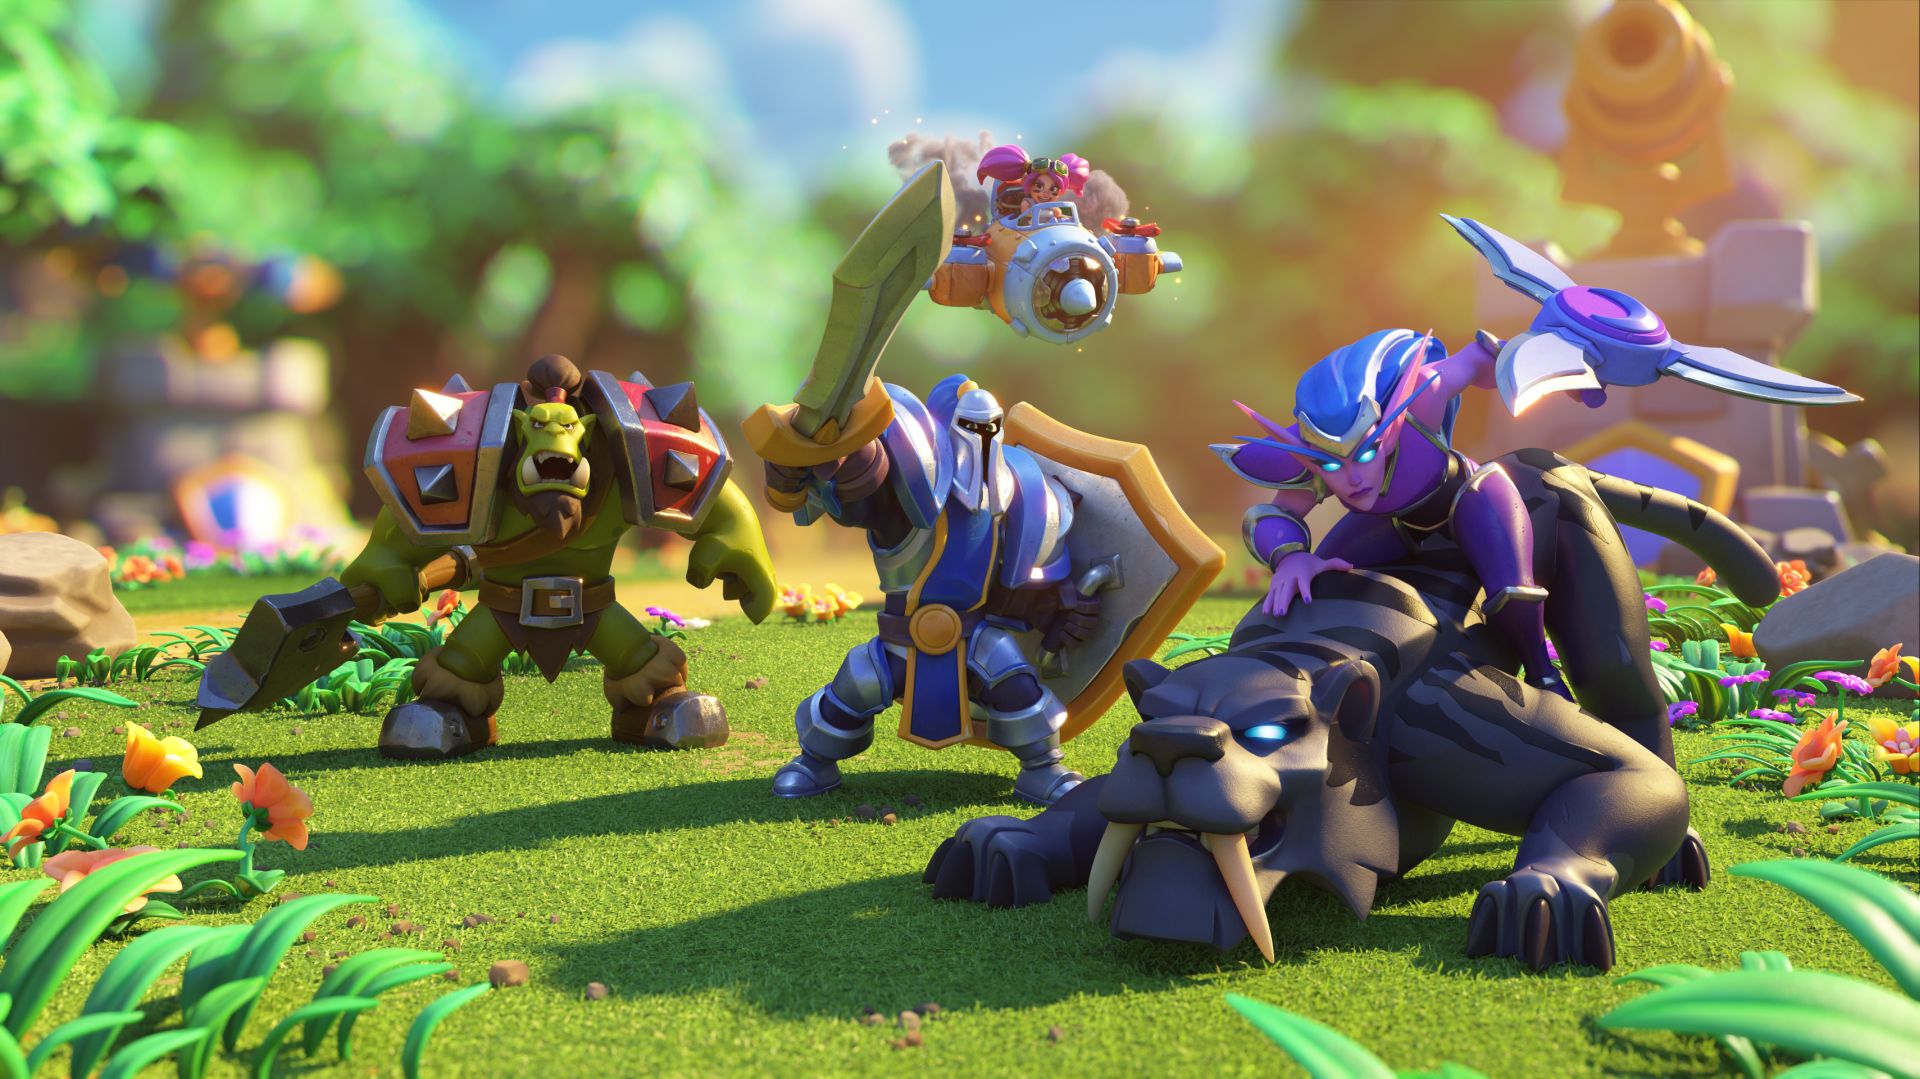 Game seluler Warcraft Rumble telah diluncurkan di Australia, Kanada, dan negara lain